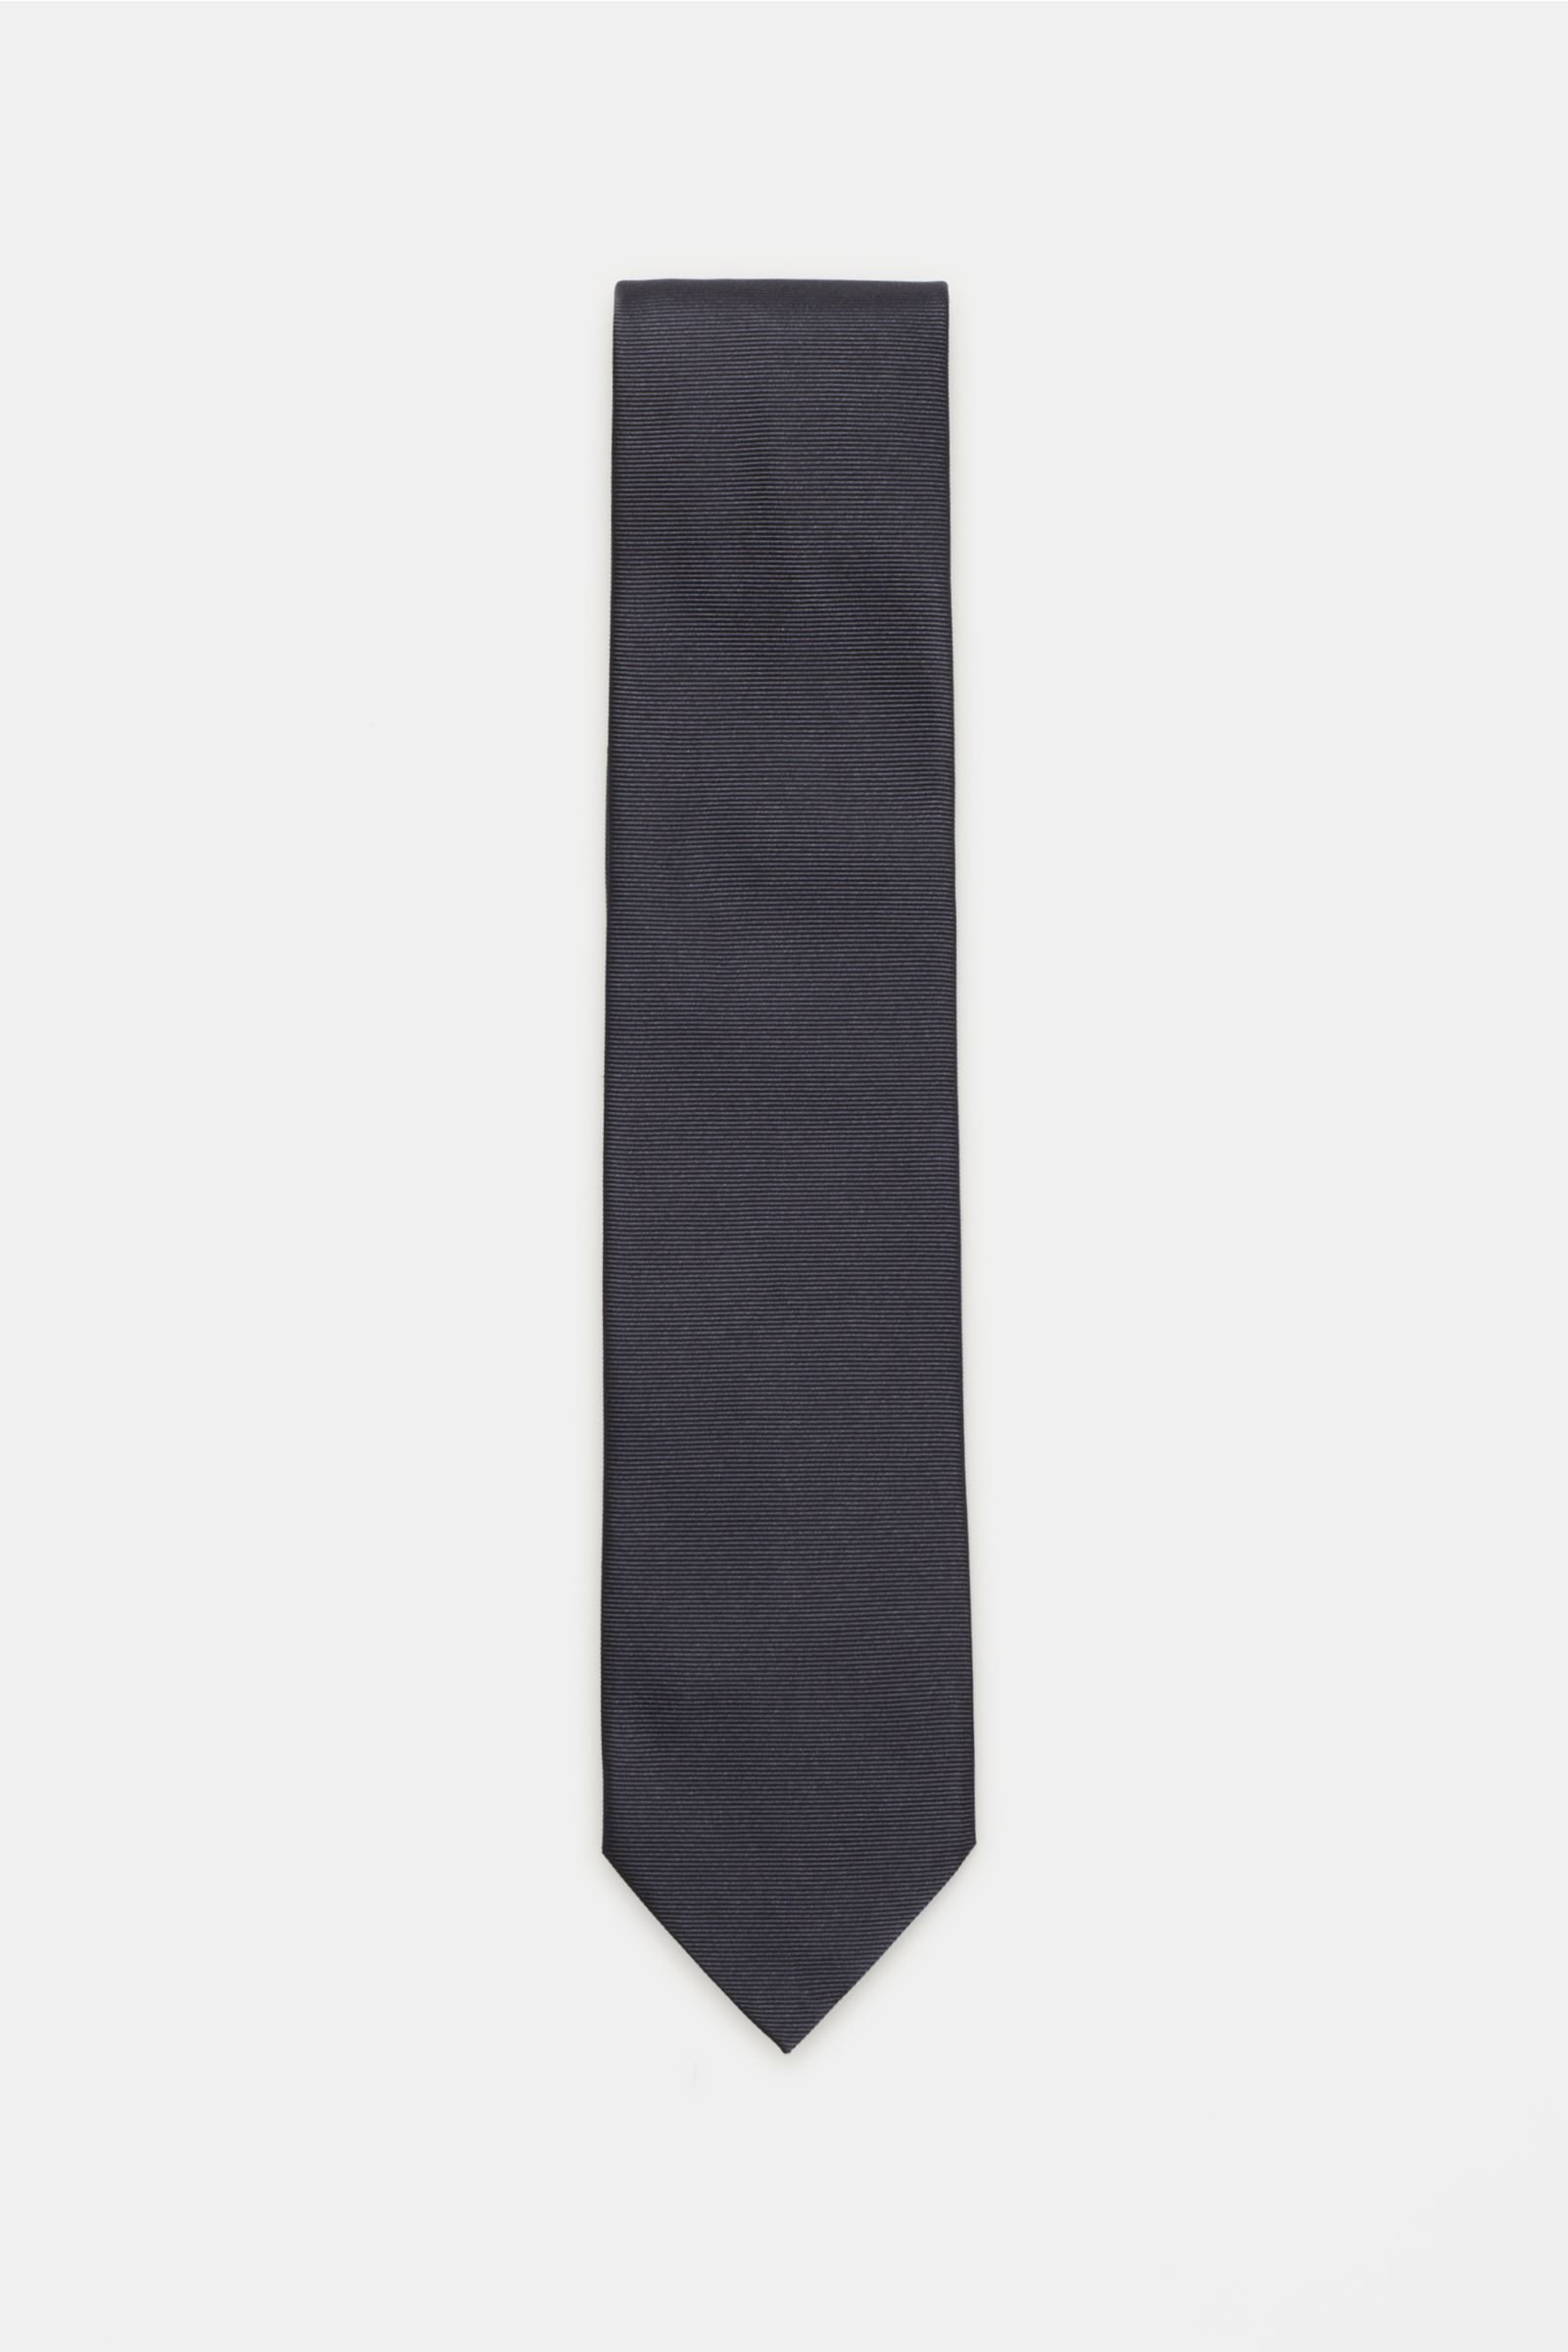 Silk tie dark grey